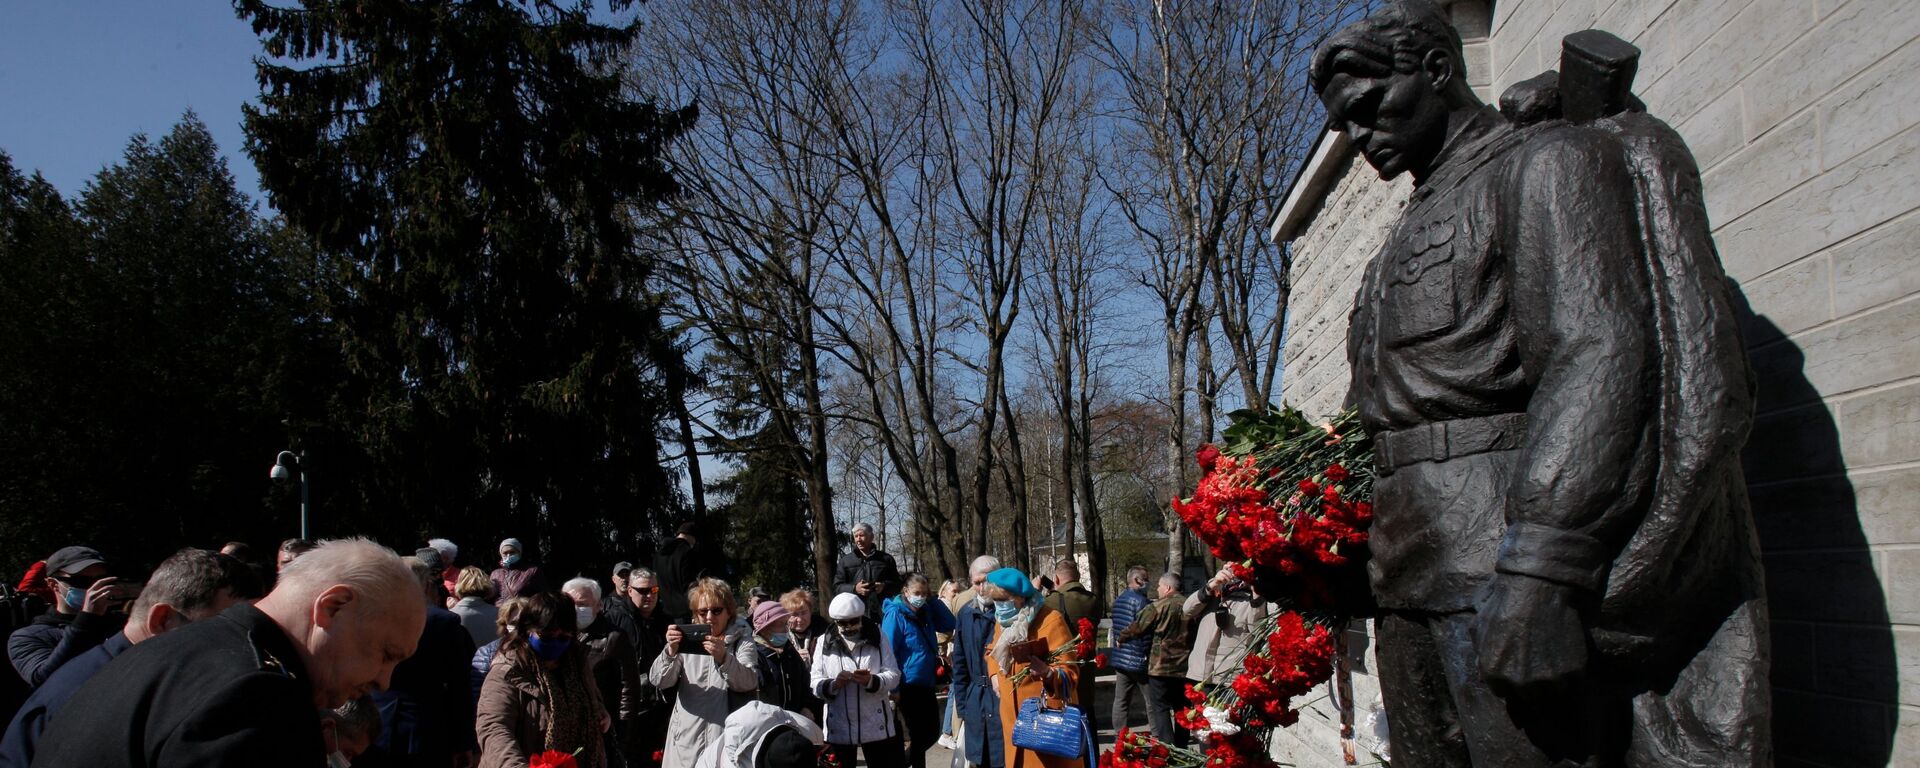 Возложение цветов к монументу Павшим во Второй мировой войне на Военном кладбище в Таллине, 9 мая 2021 - Sputnik Латвия, 1920, 18.05.2021